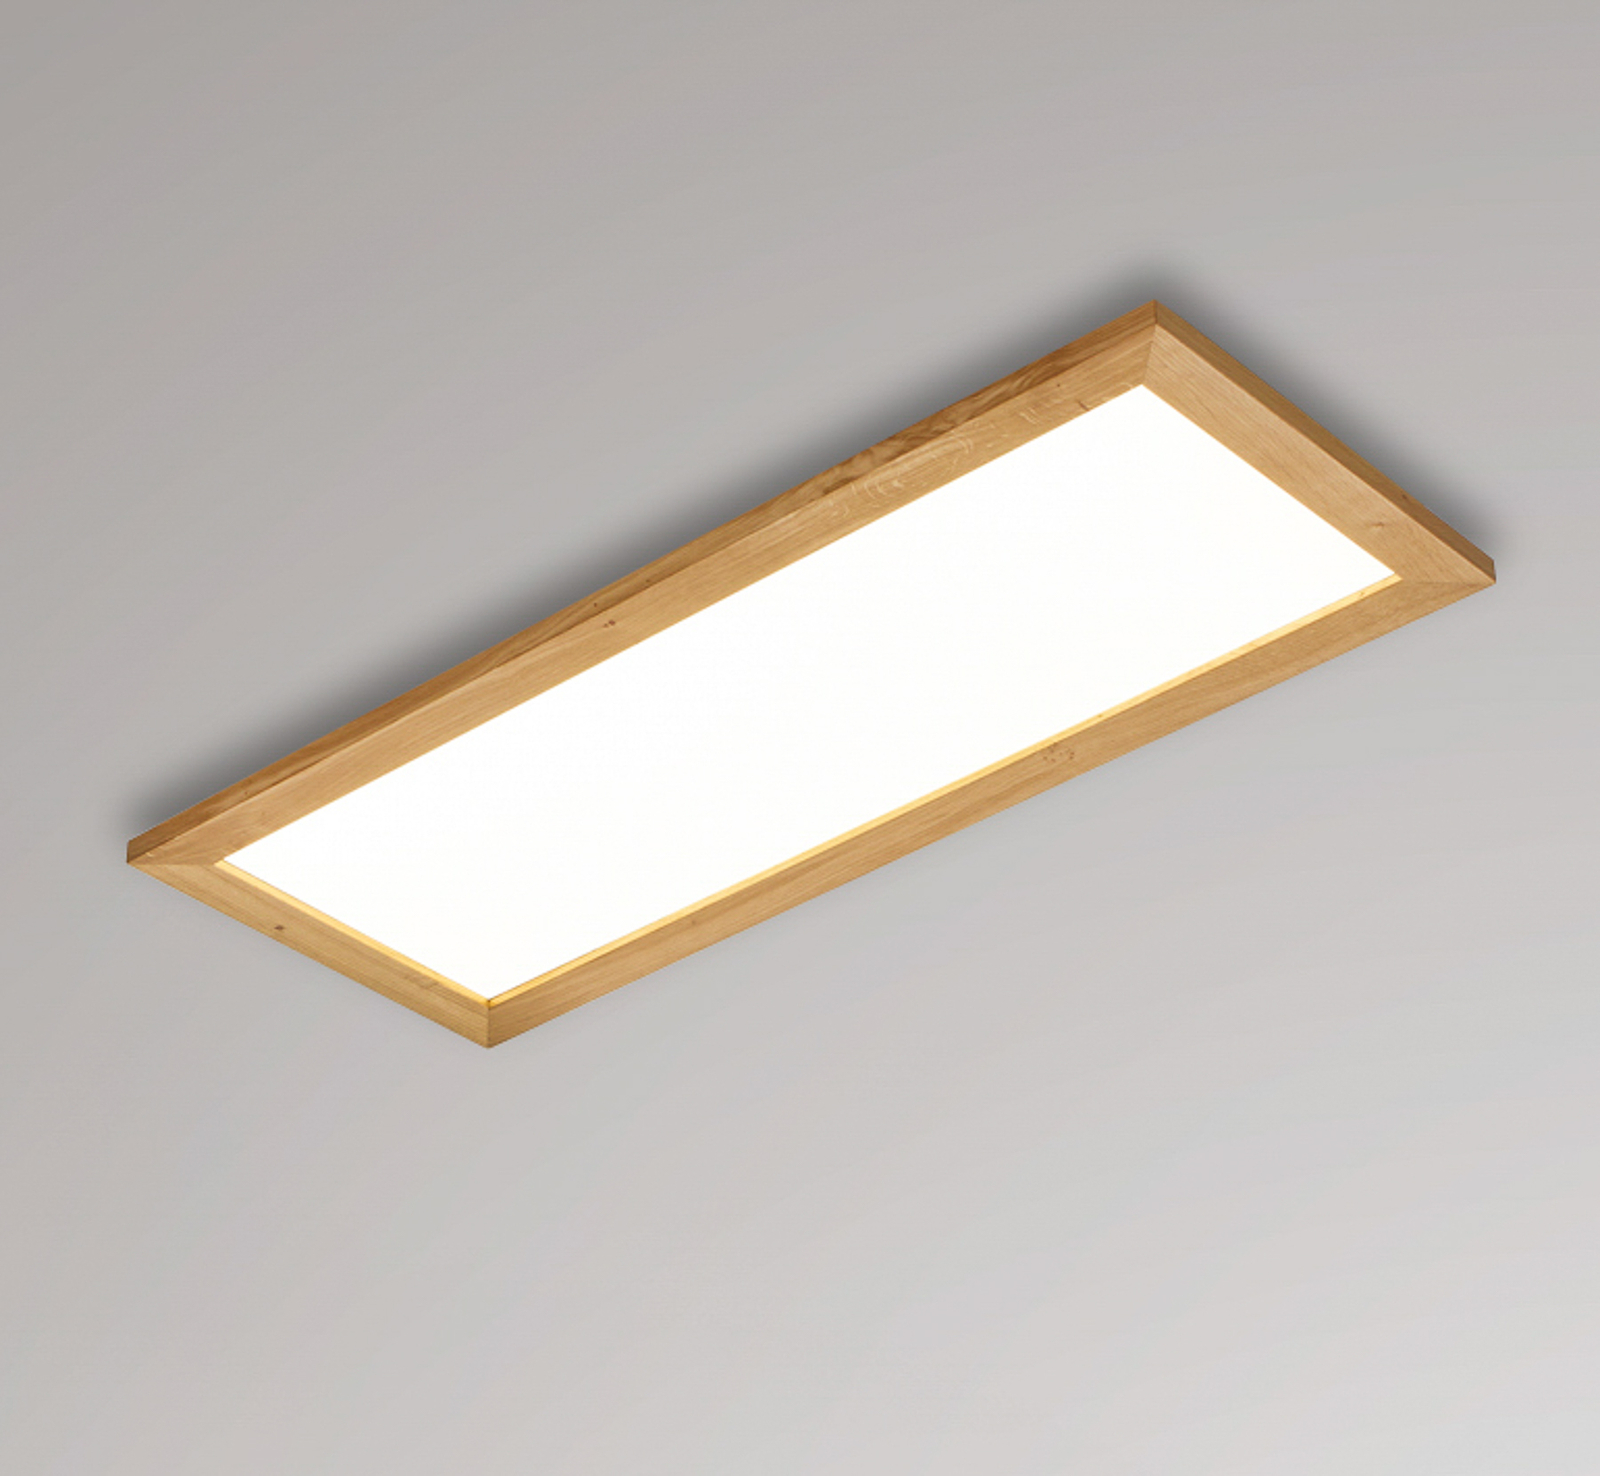 Quitani Aurinor panel LED, roble natural, 86 cm